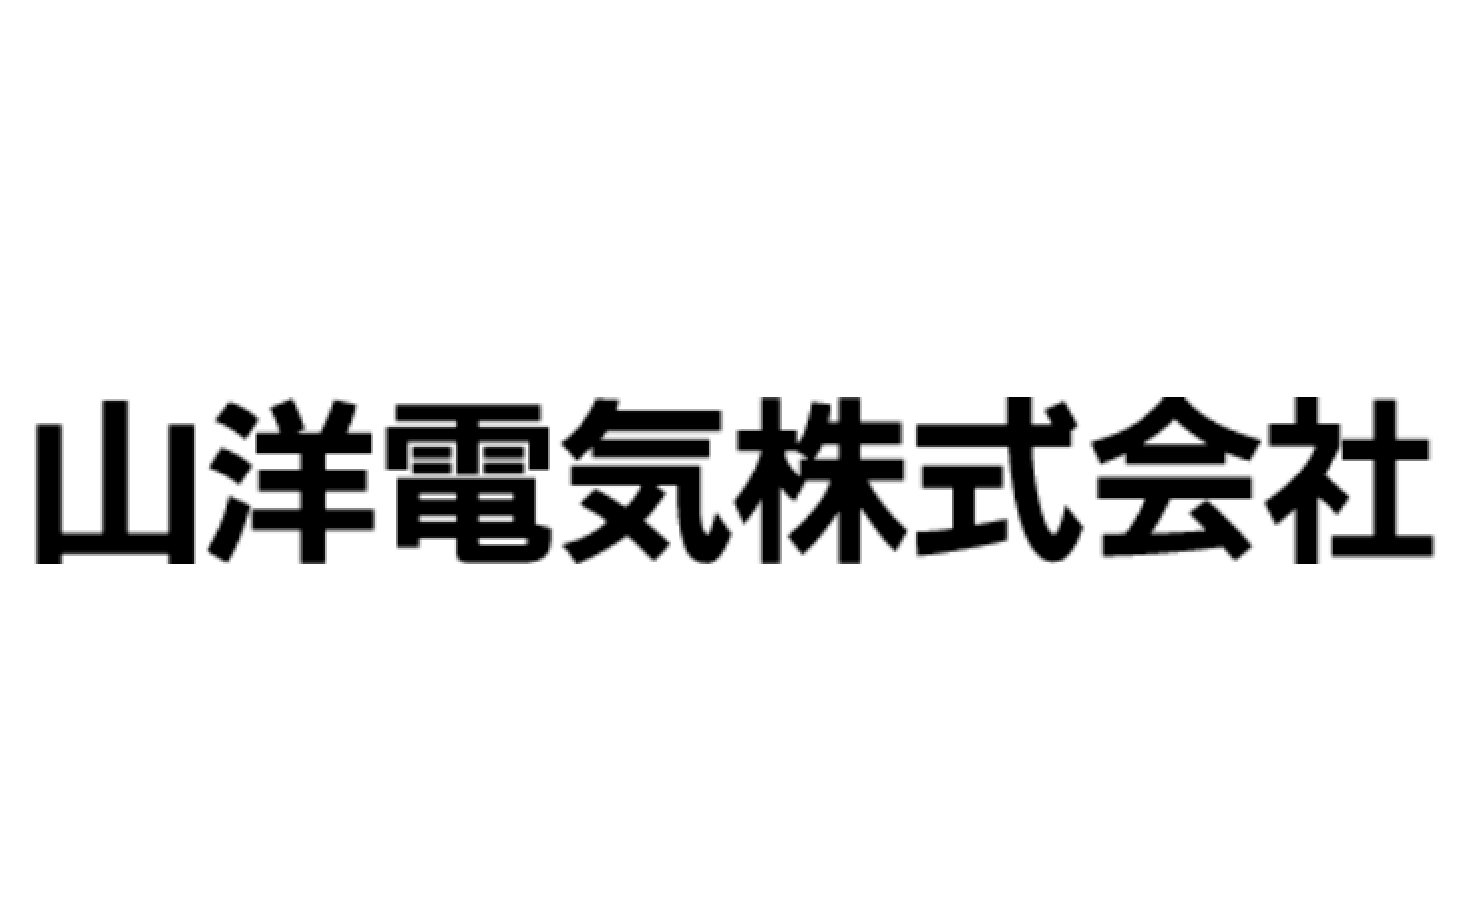 山洋電気株式会社上田事業所